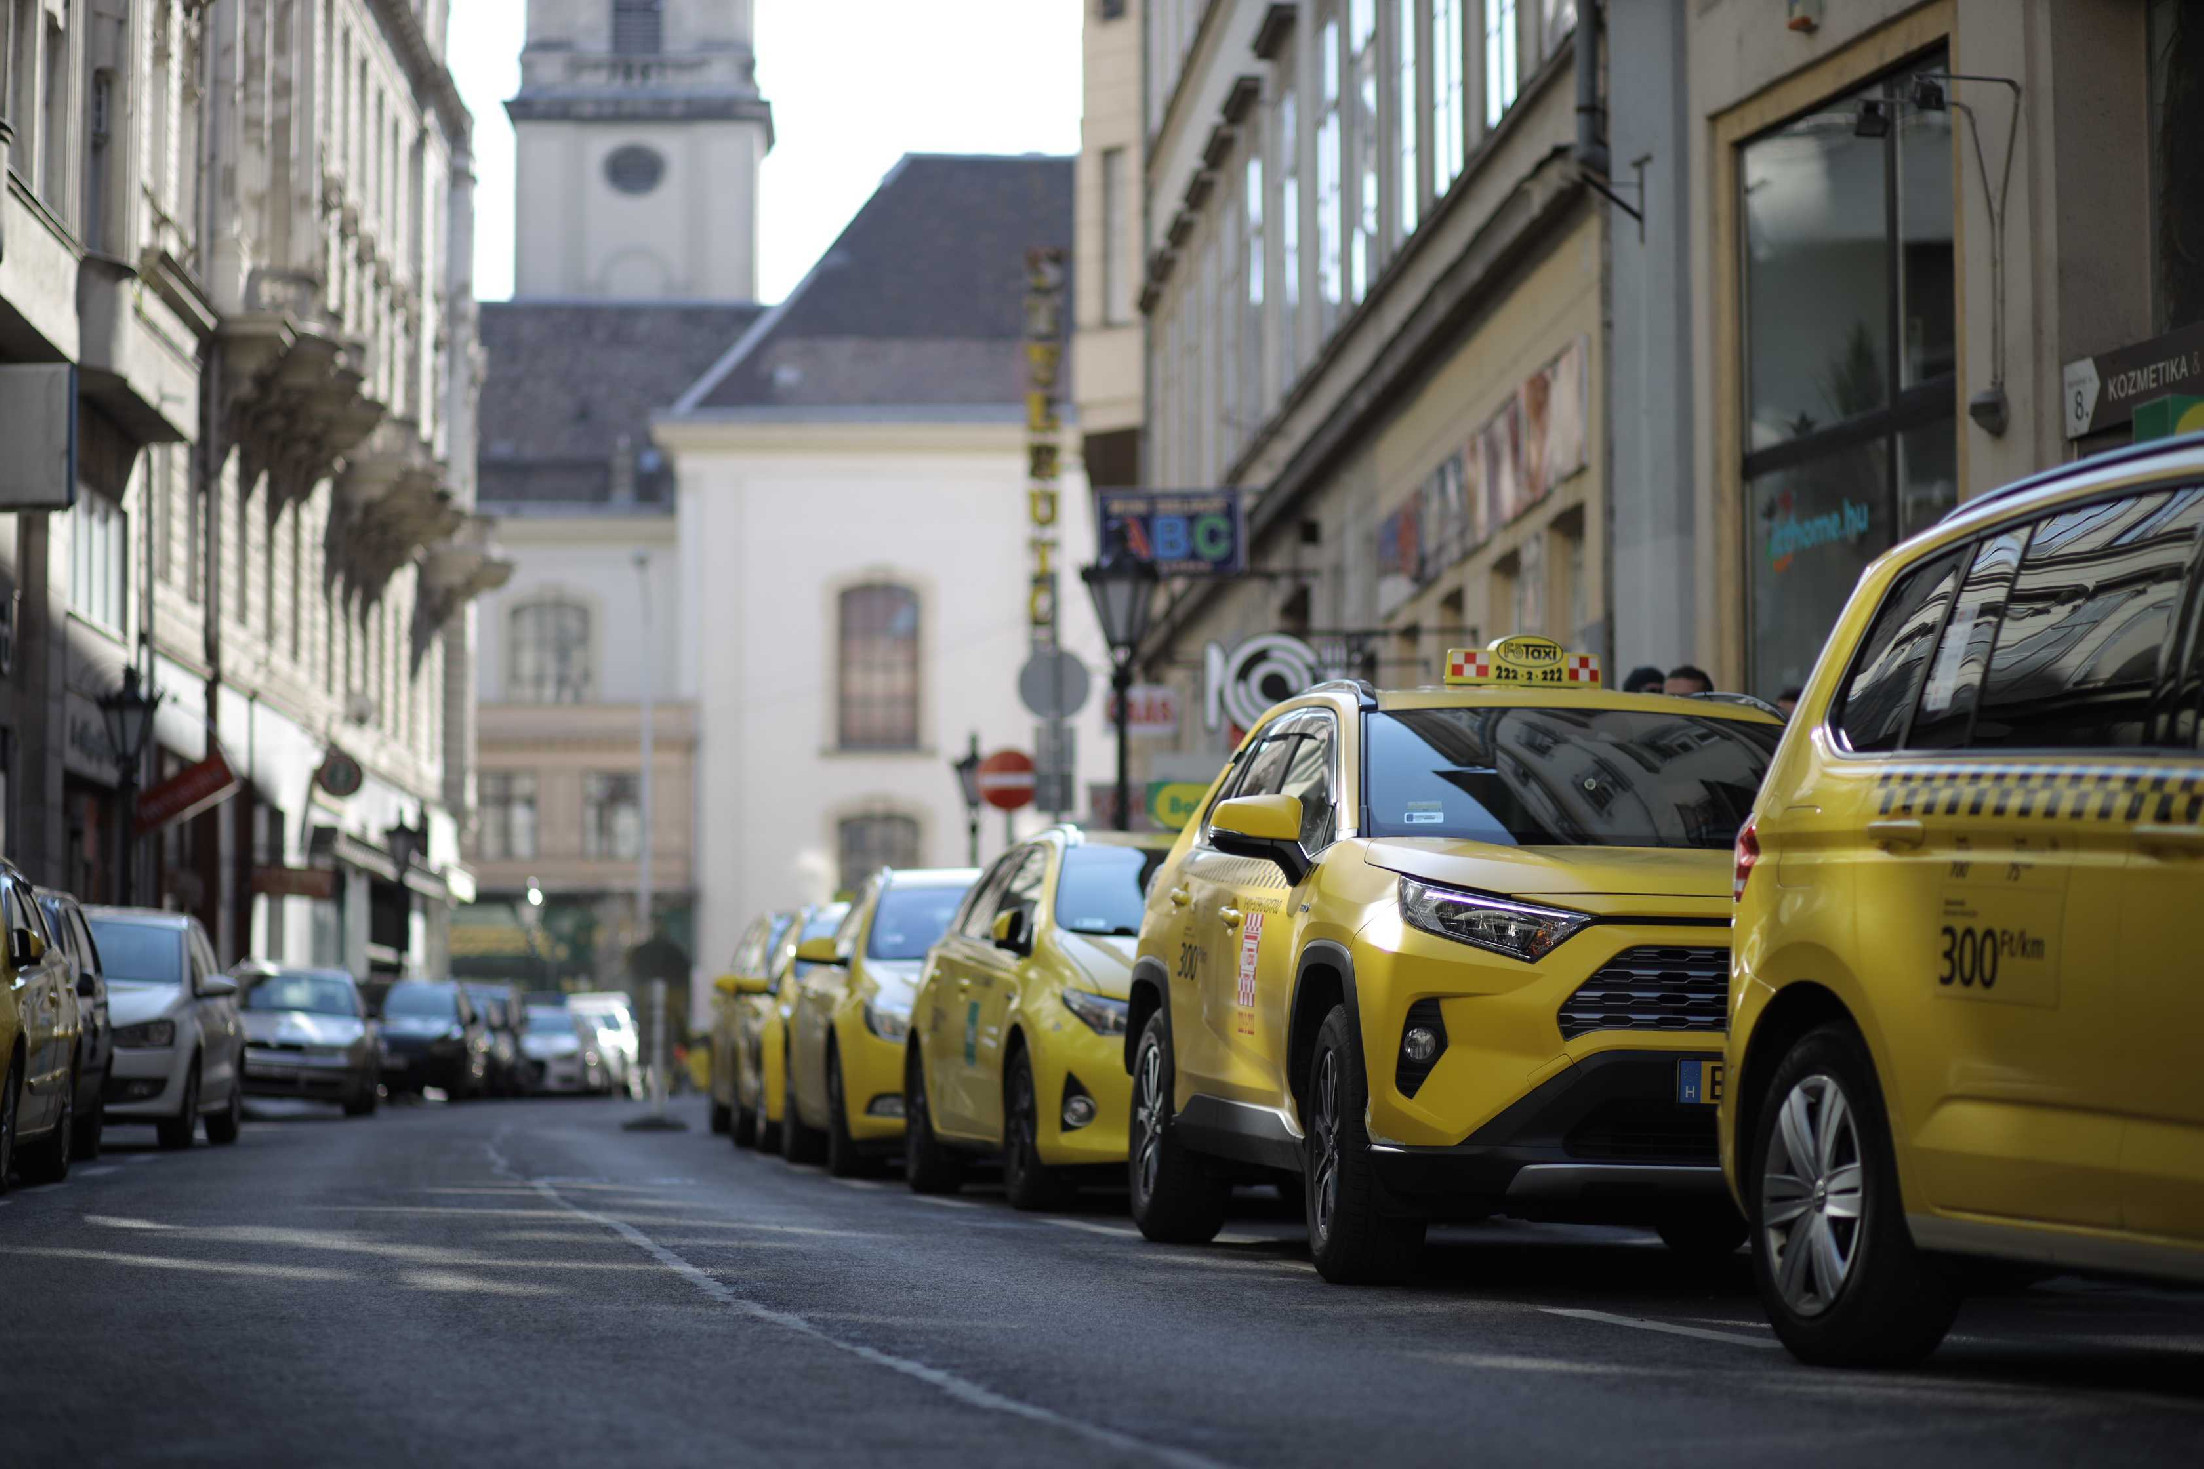 Hatalmas változások várhatóak a taxizás szabályaiban